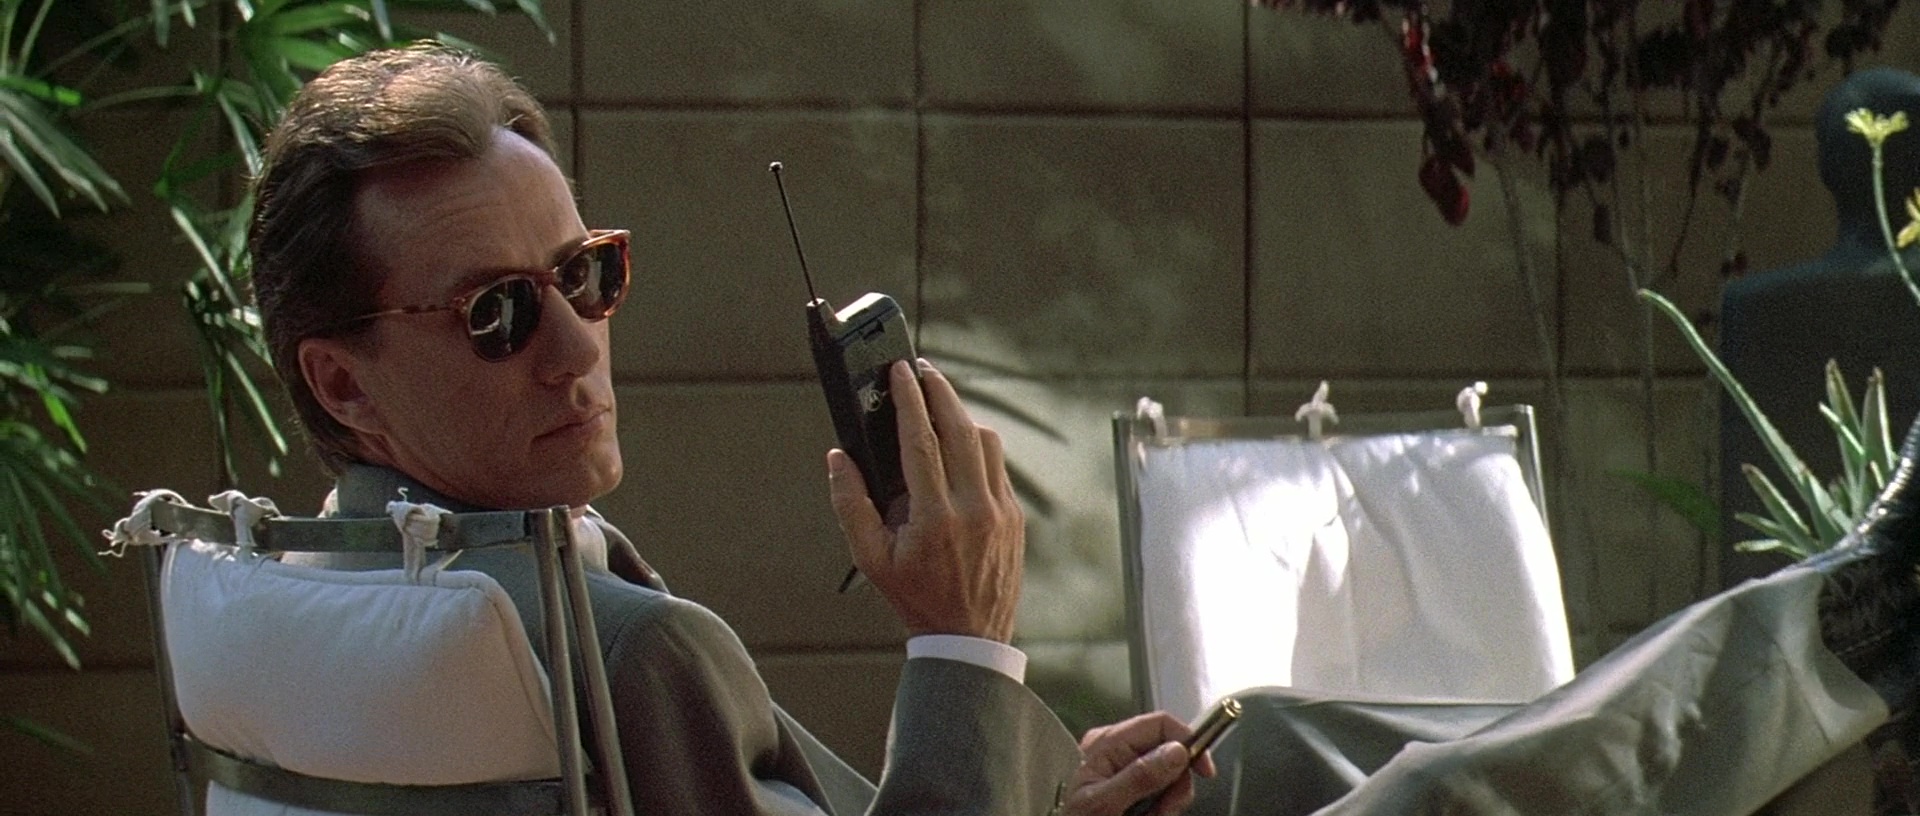 Motorola Mobile Phone Used by James Woods in The Getaway (1994) Movie1920 x 816